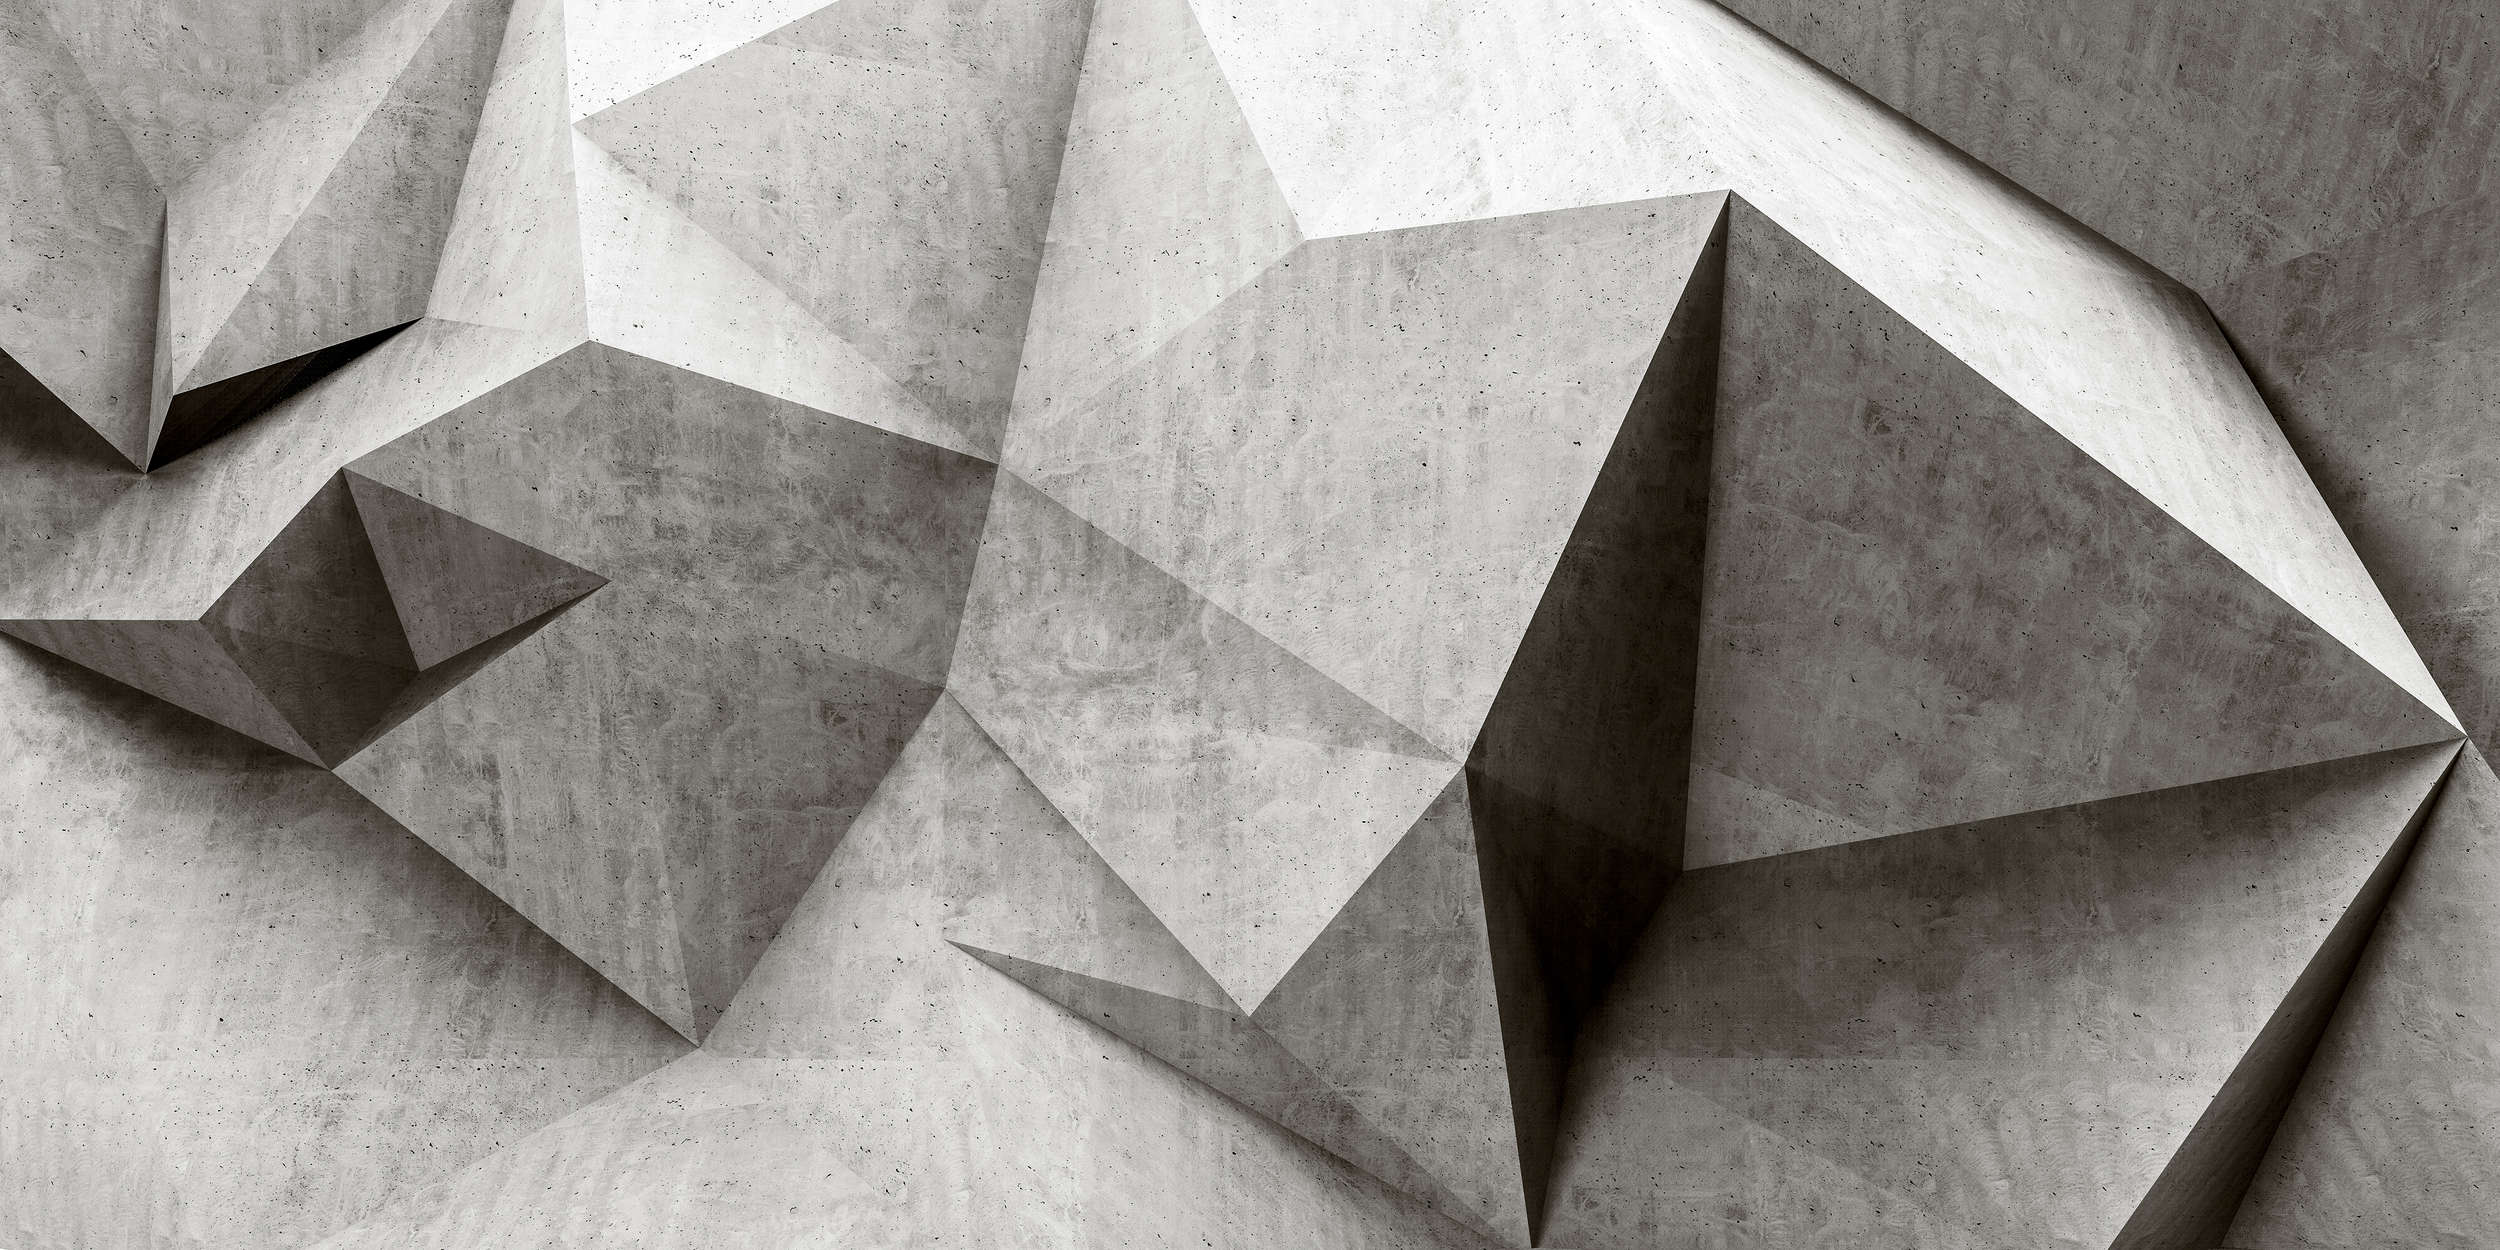             Boulder 1 - Papier peint 3D cool polygone de béton - gris, noir | Intissé lisse mat
        